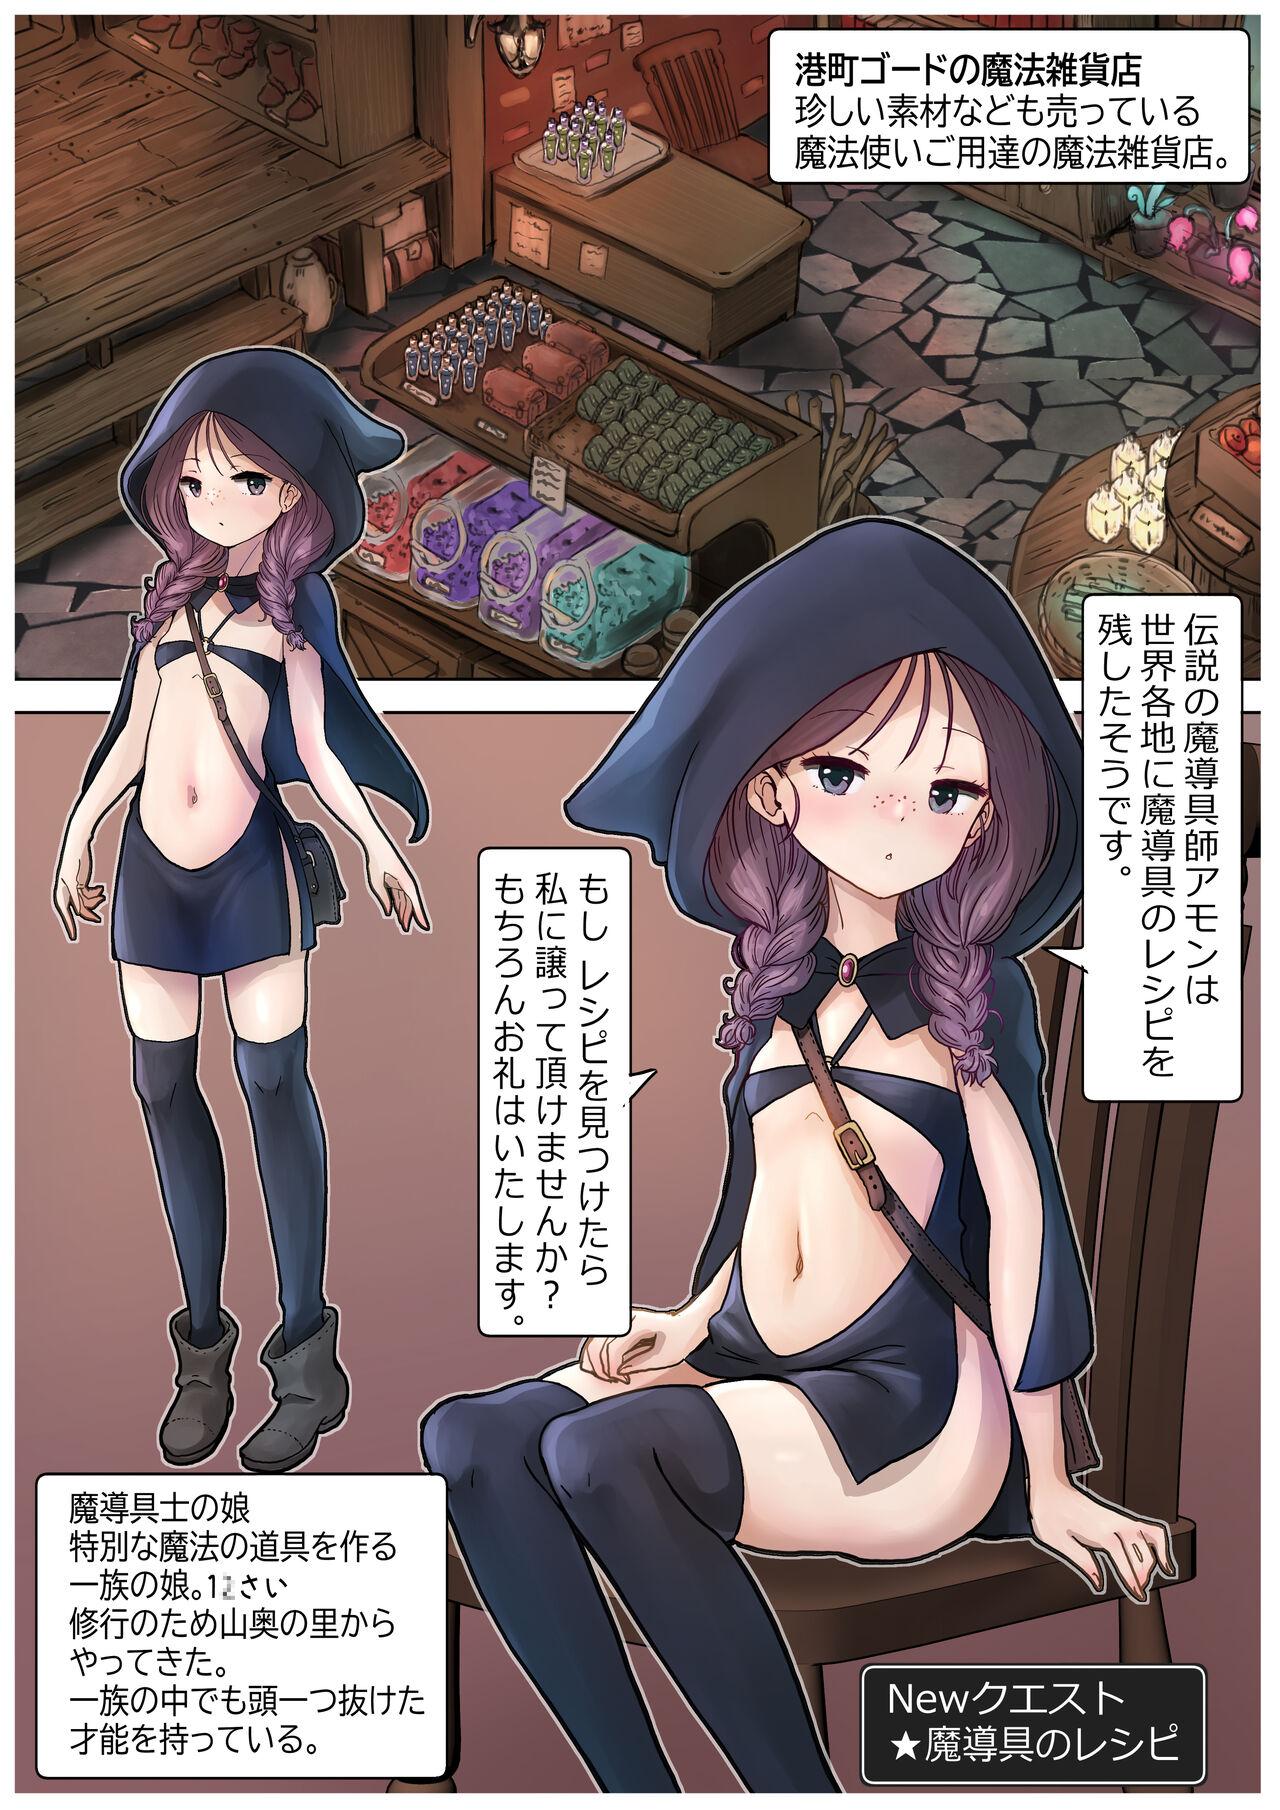 [tsubame] RPG girls ❤︎ [NPC kan no shou] 1 33